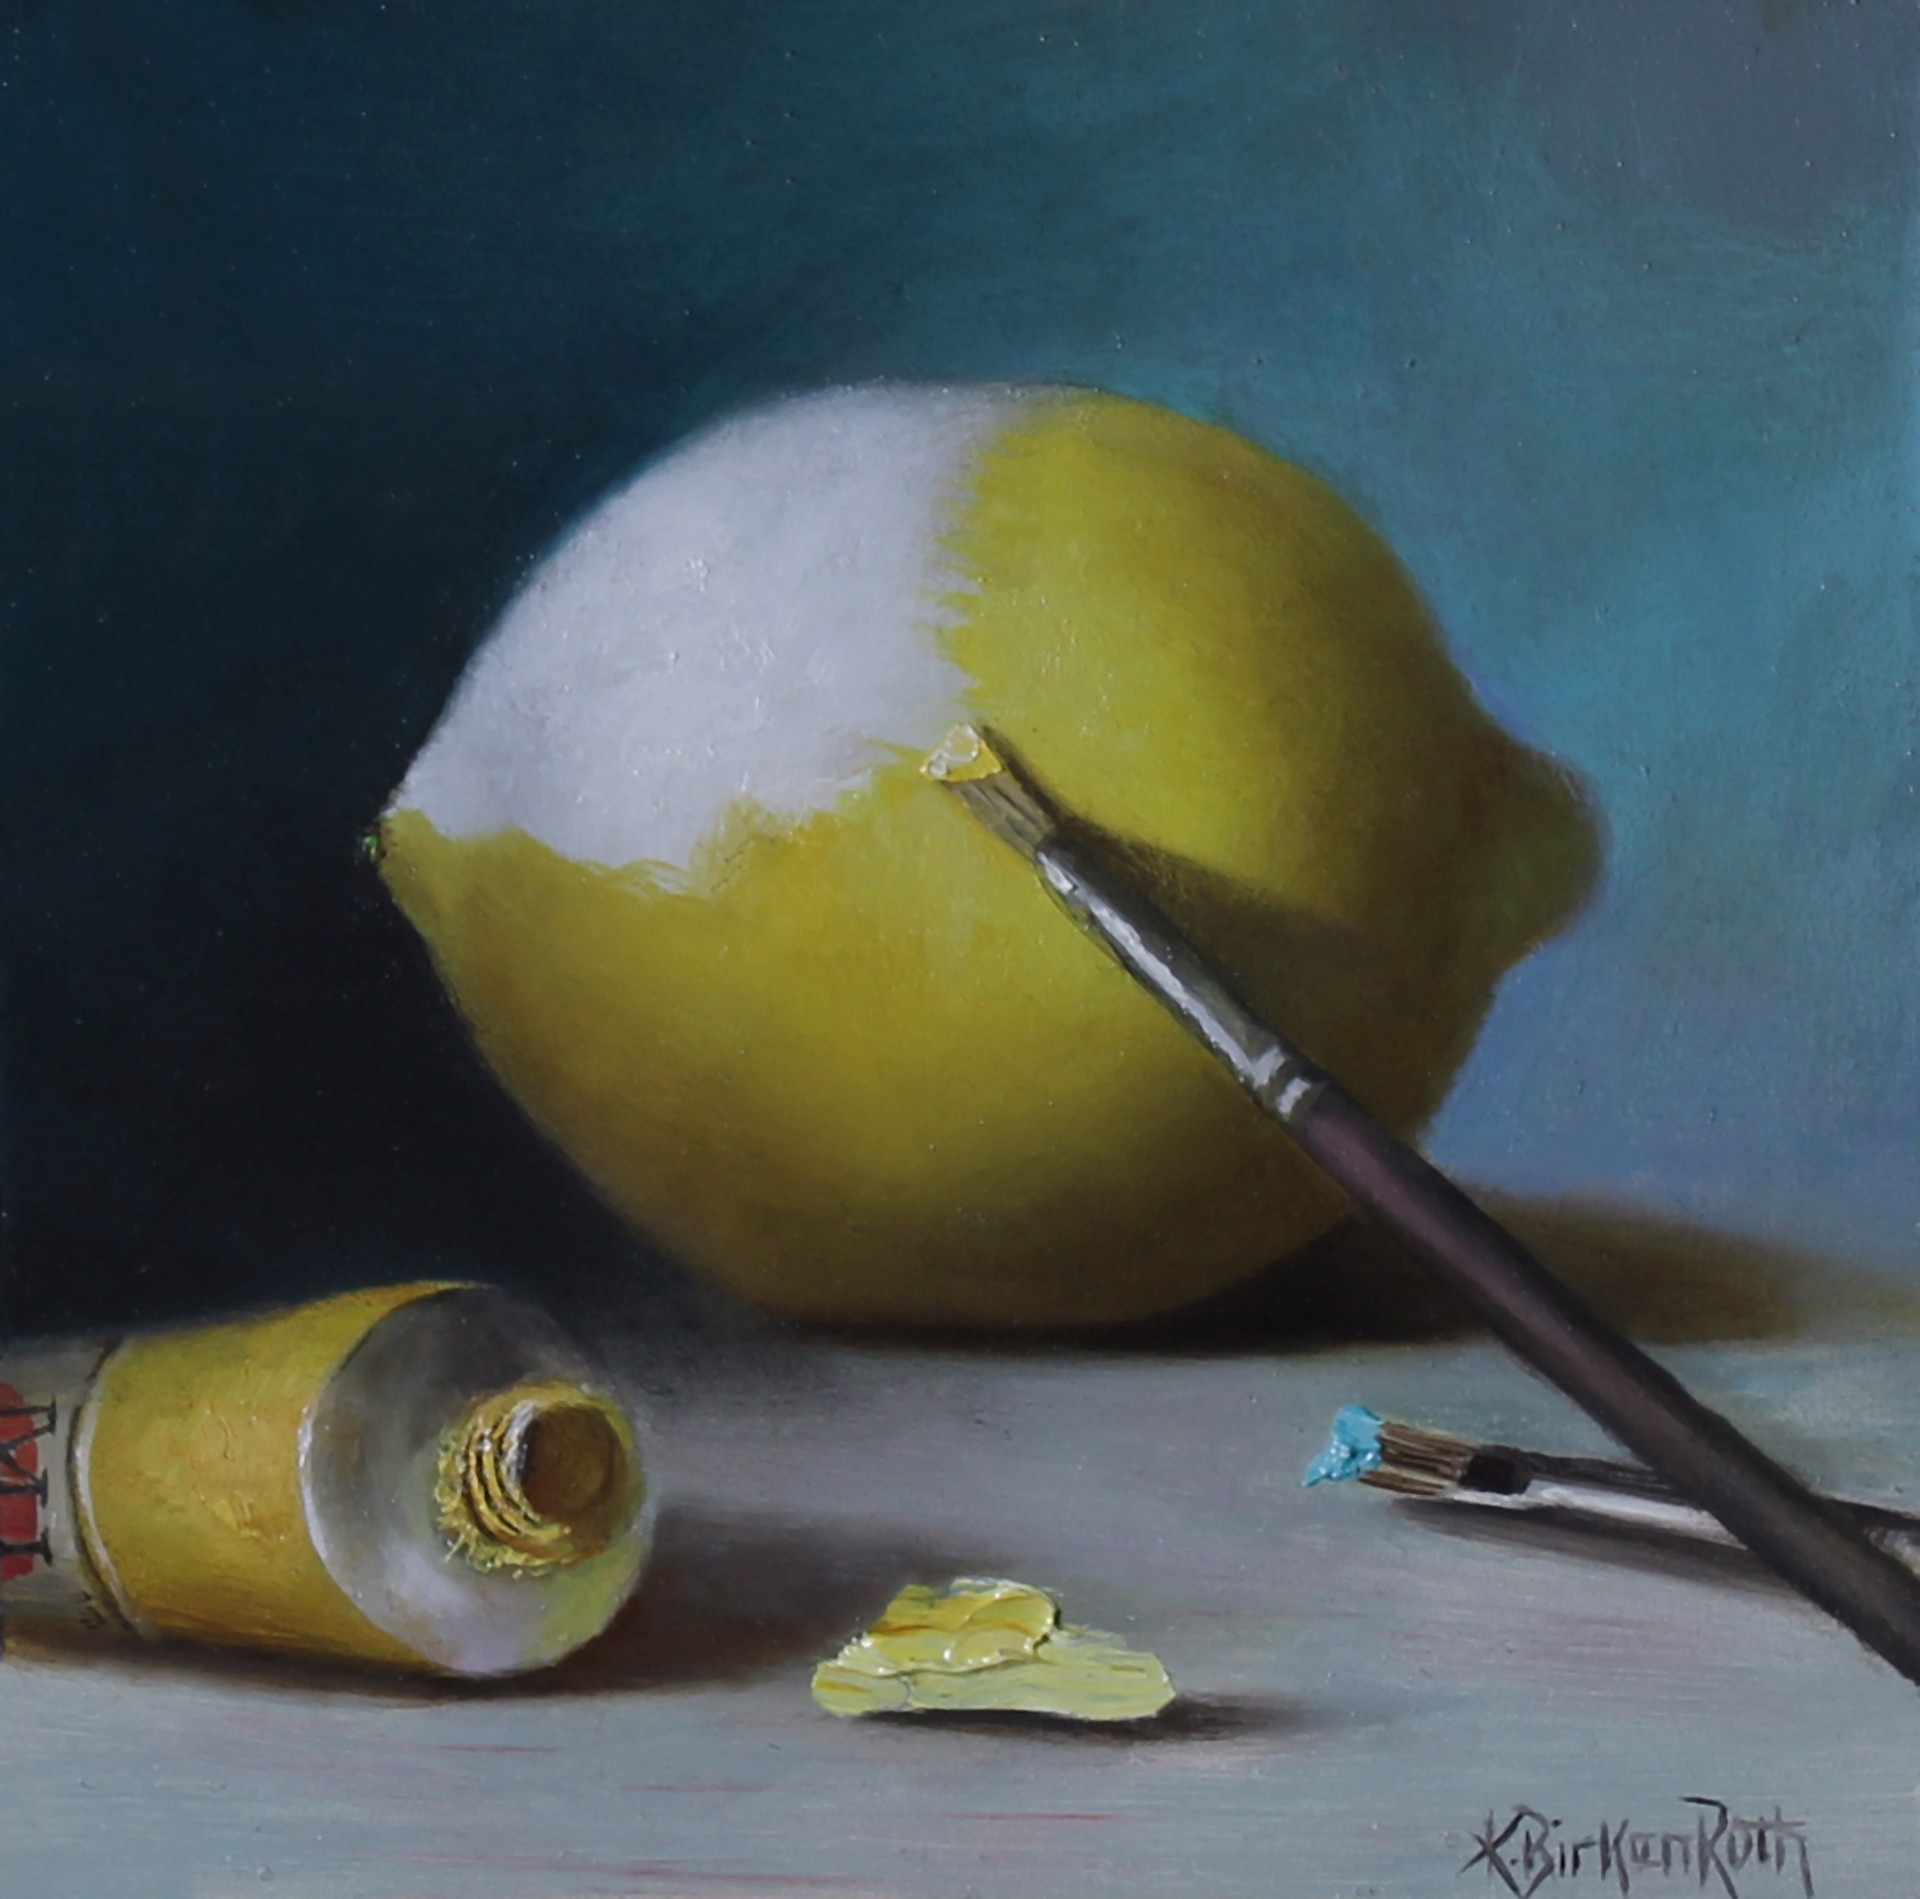 Best use of Lemon Yellow by Kelly Birkenruth